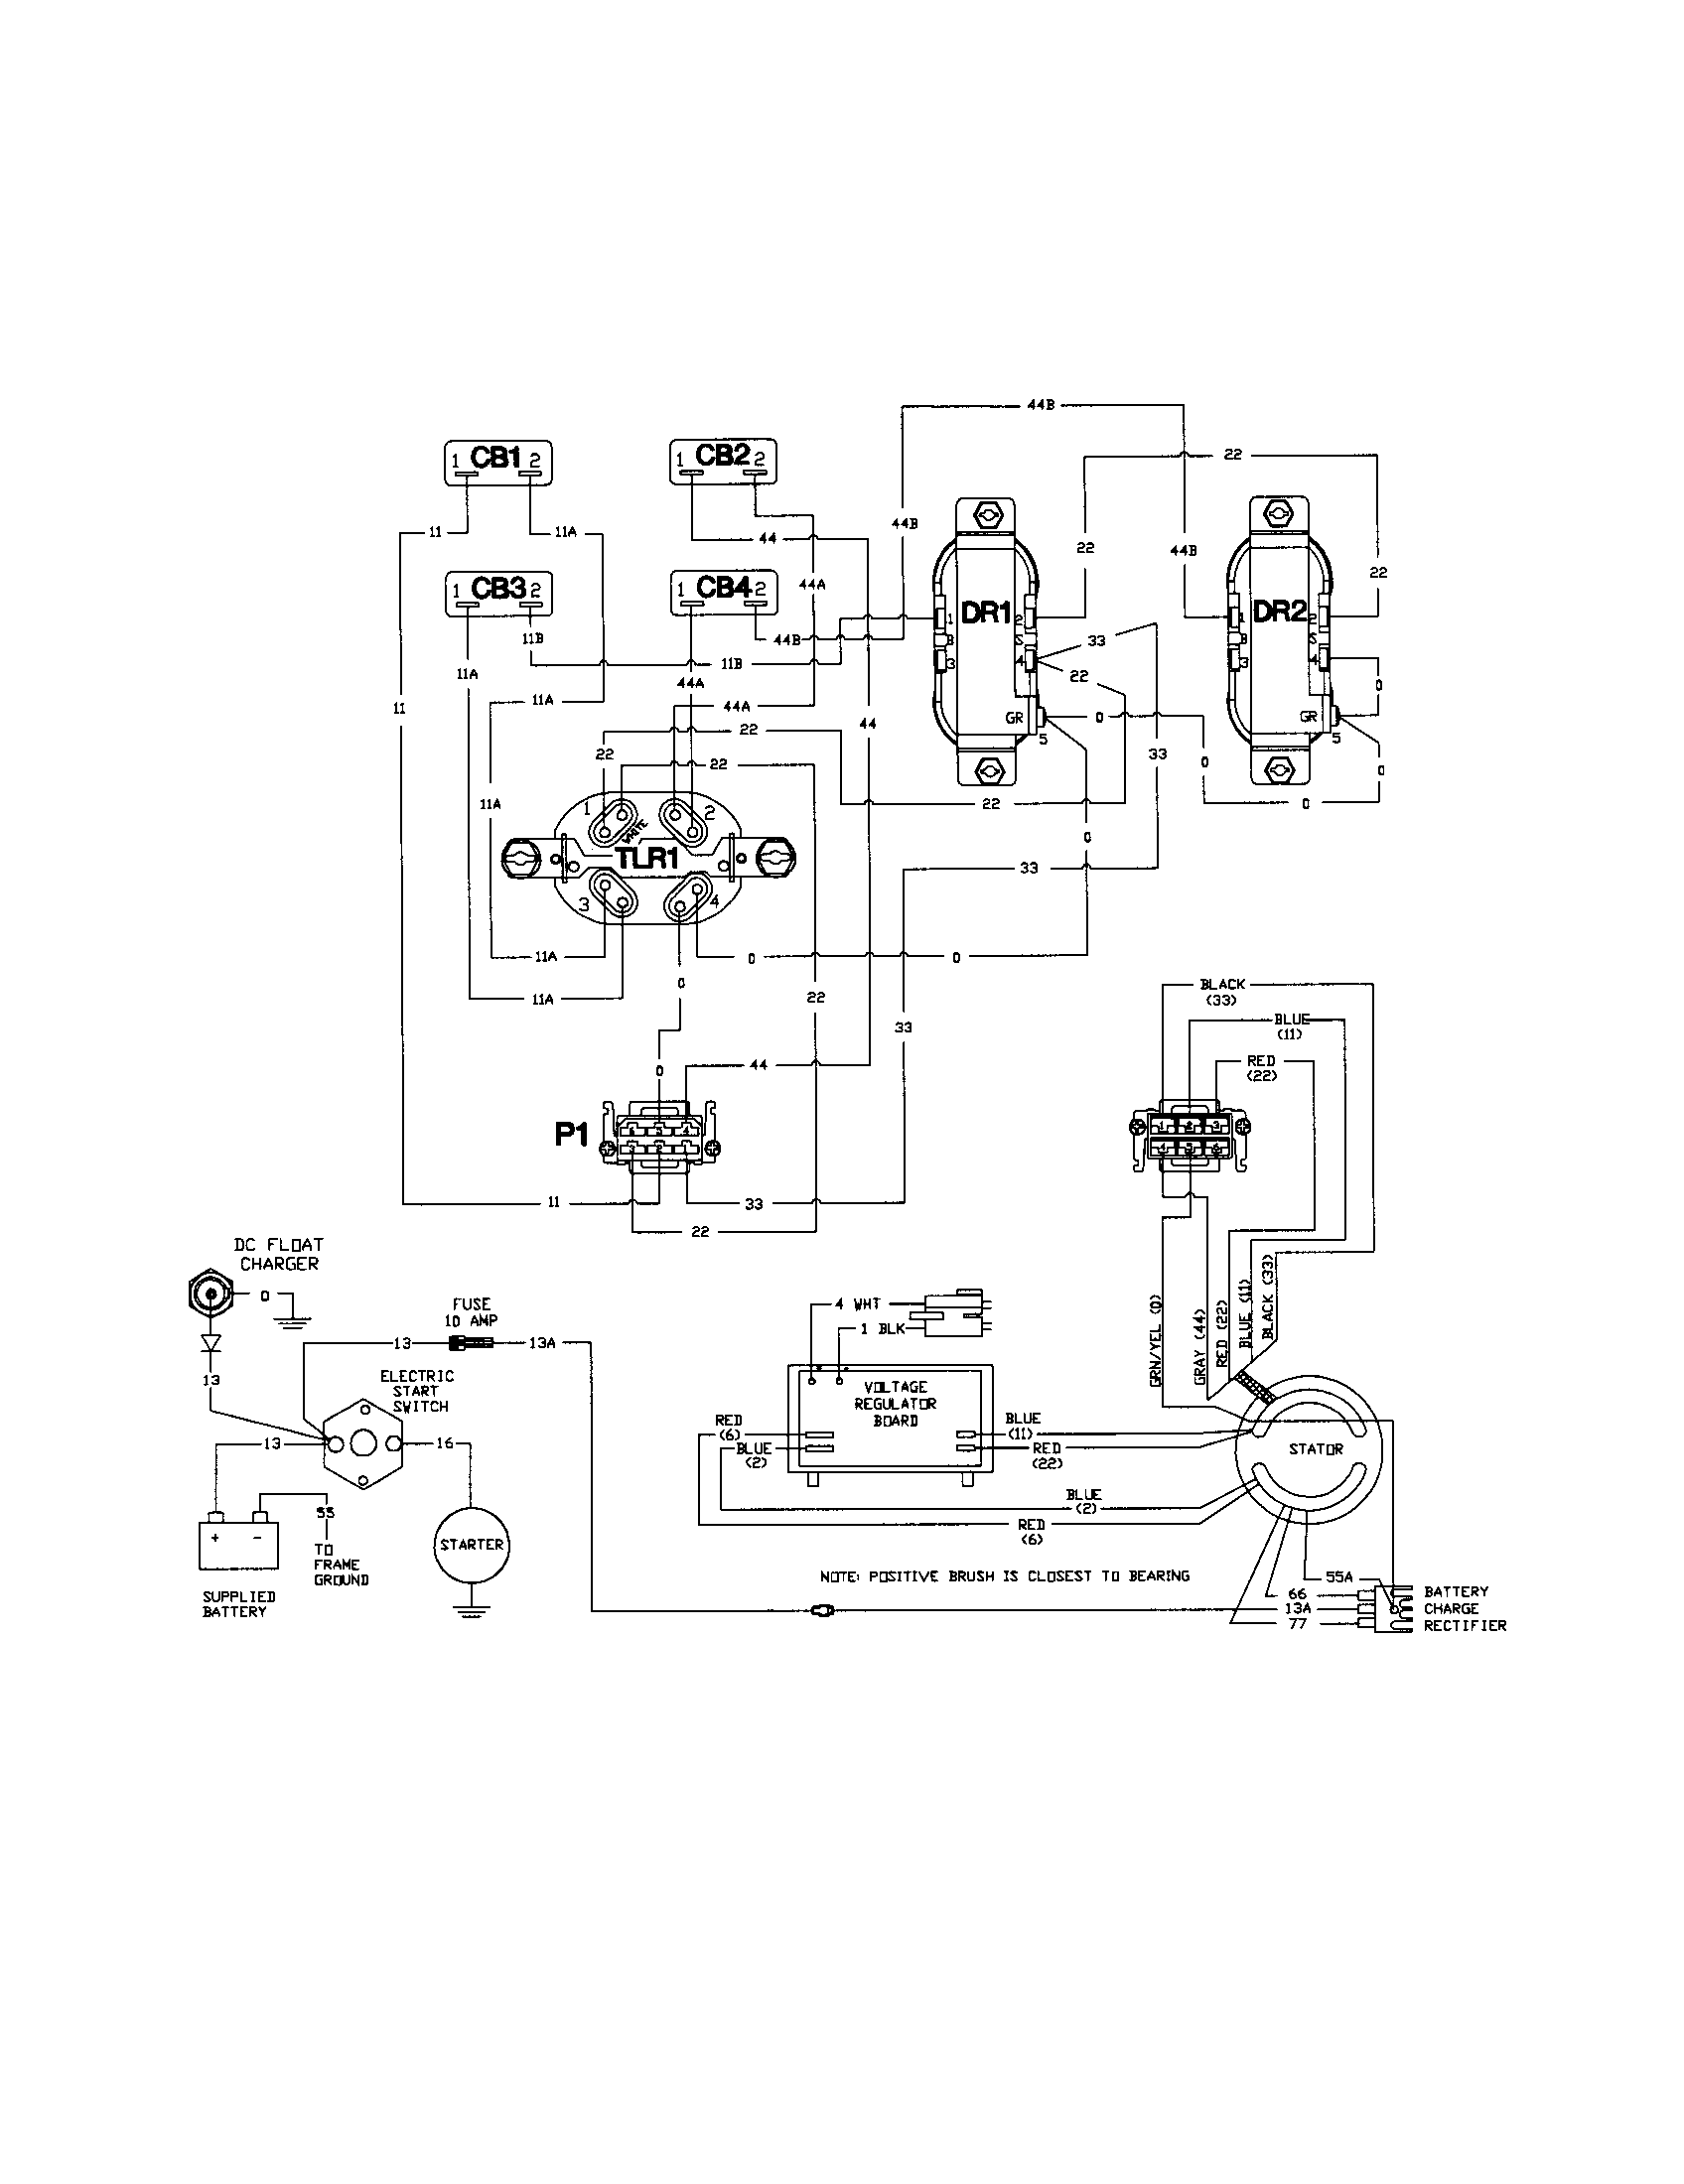 Wiring Diagram For Craftsman Generator